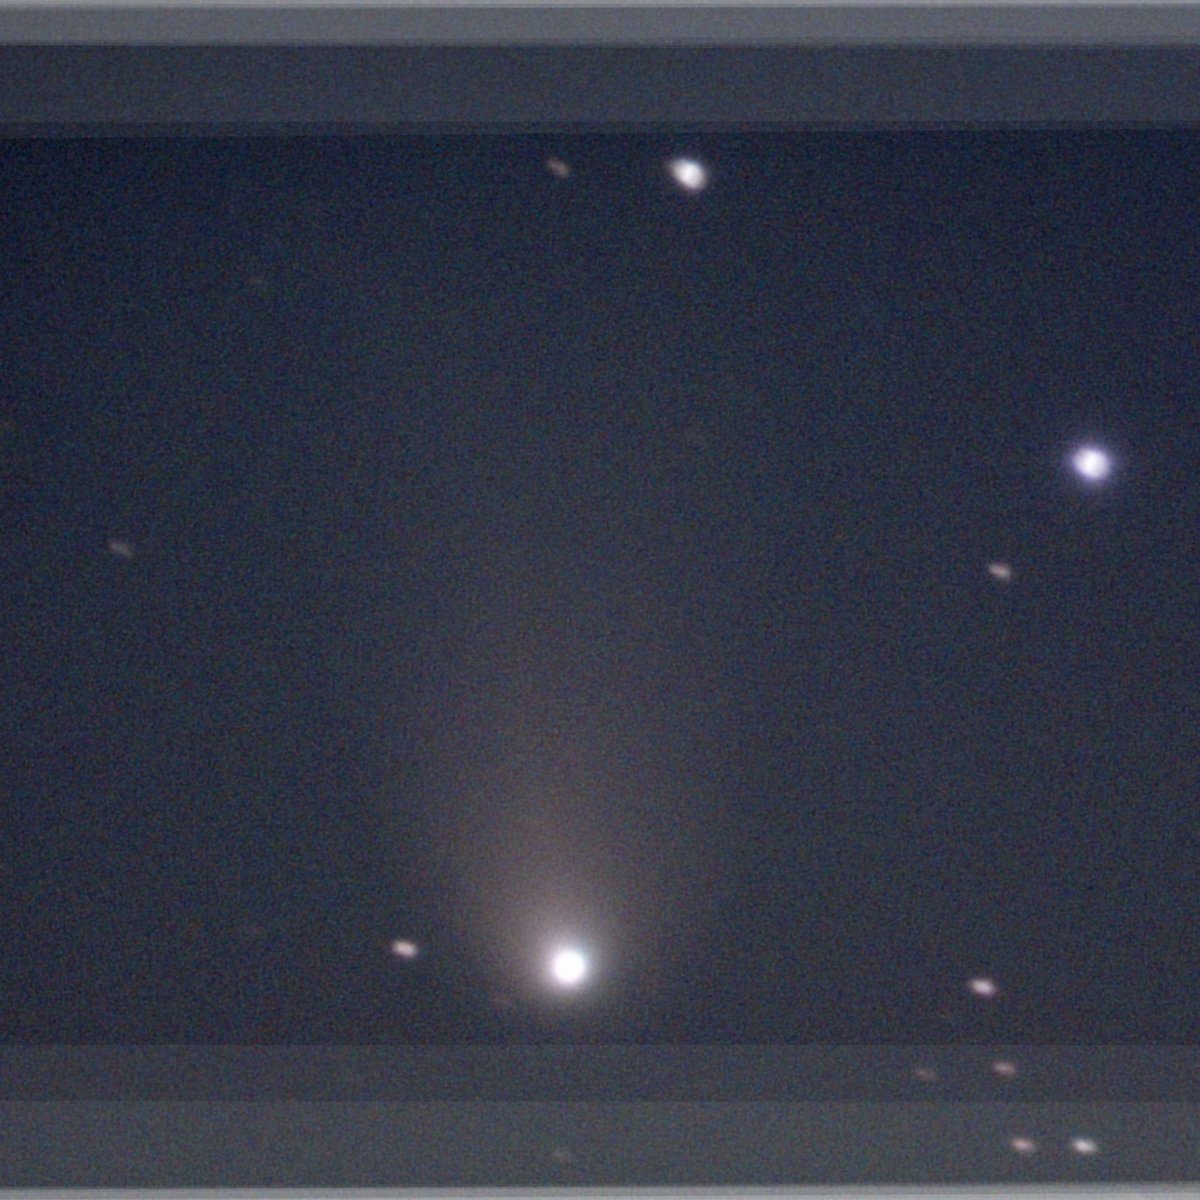 昨日の 12P/Pons-Brooks 彗星、4秒エンハンスしかできず、それを25枚平均した。そろそろ限界っぽい。でも、周期彗星なので、70年後くらいにまた会えるらしい。
#eVscope